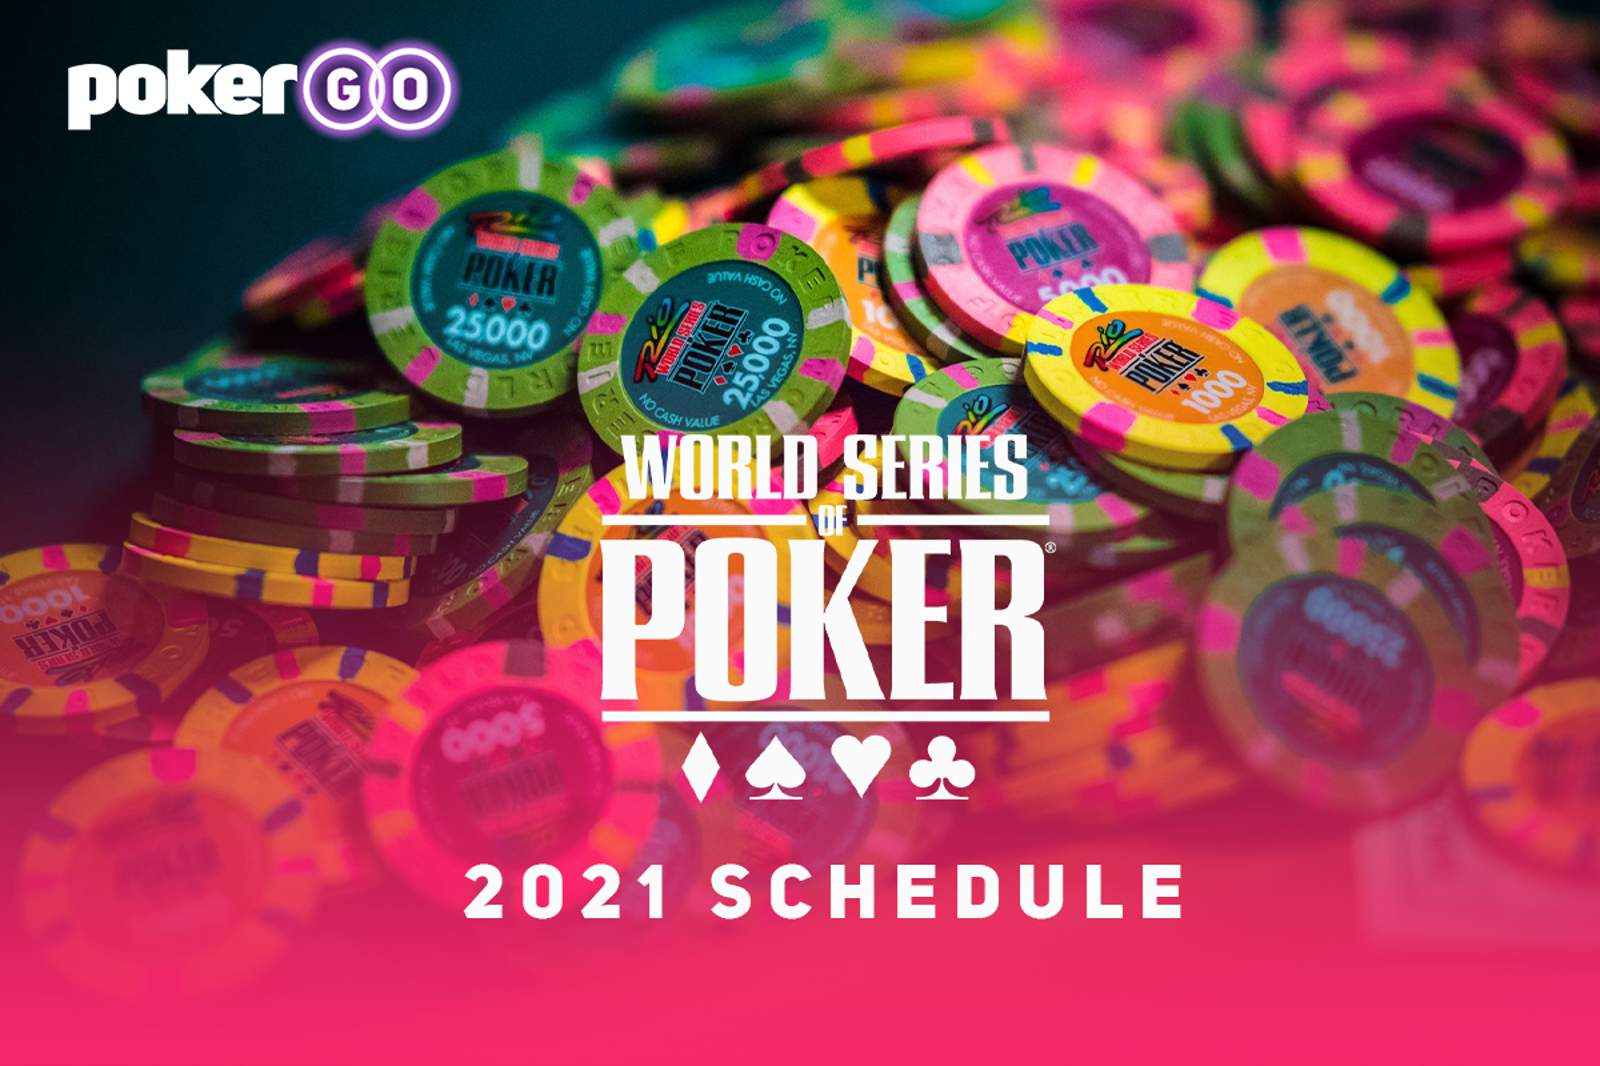 WSOP 2021 Schedule Released - 88 Bracelet Events